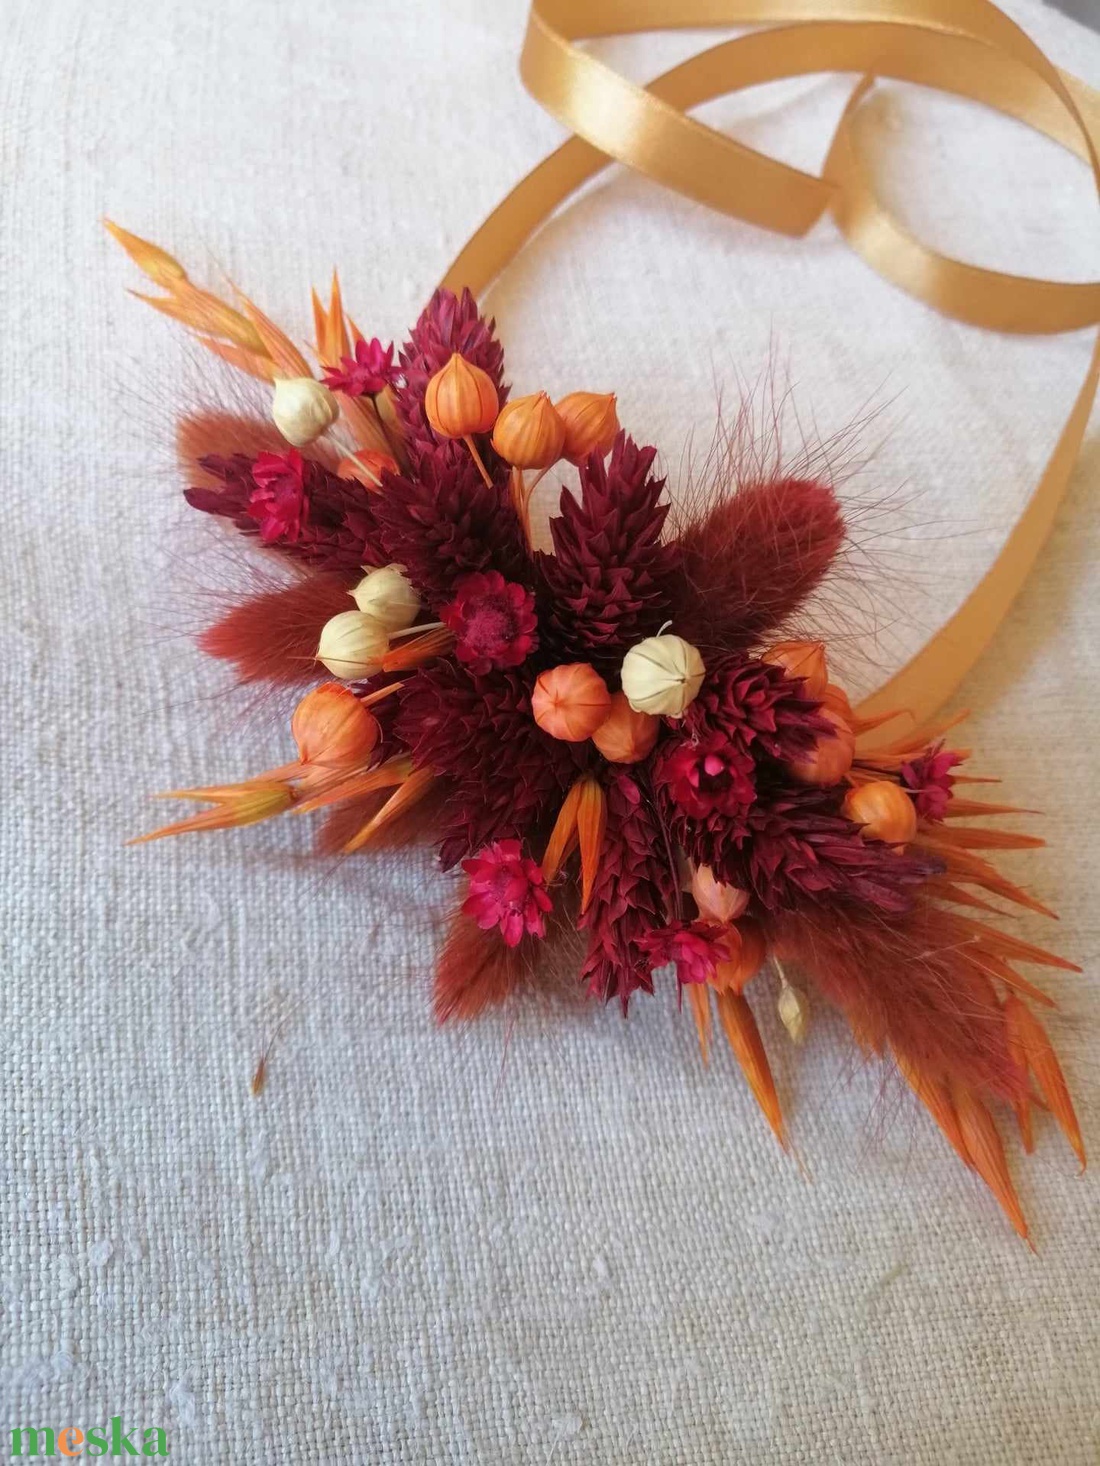 Esküvői csuklódísz szárazvirágból őszi szinekkel - esküvő - ékszer - karkötő & csuklódísz - Meska.hu